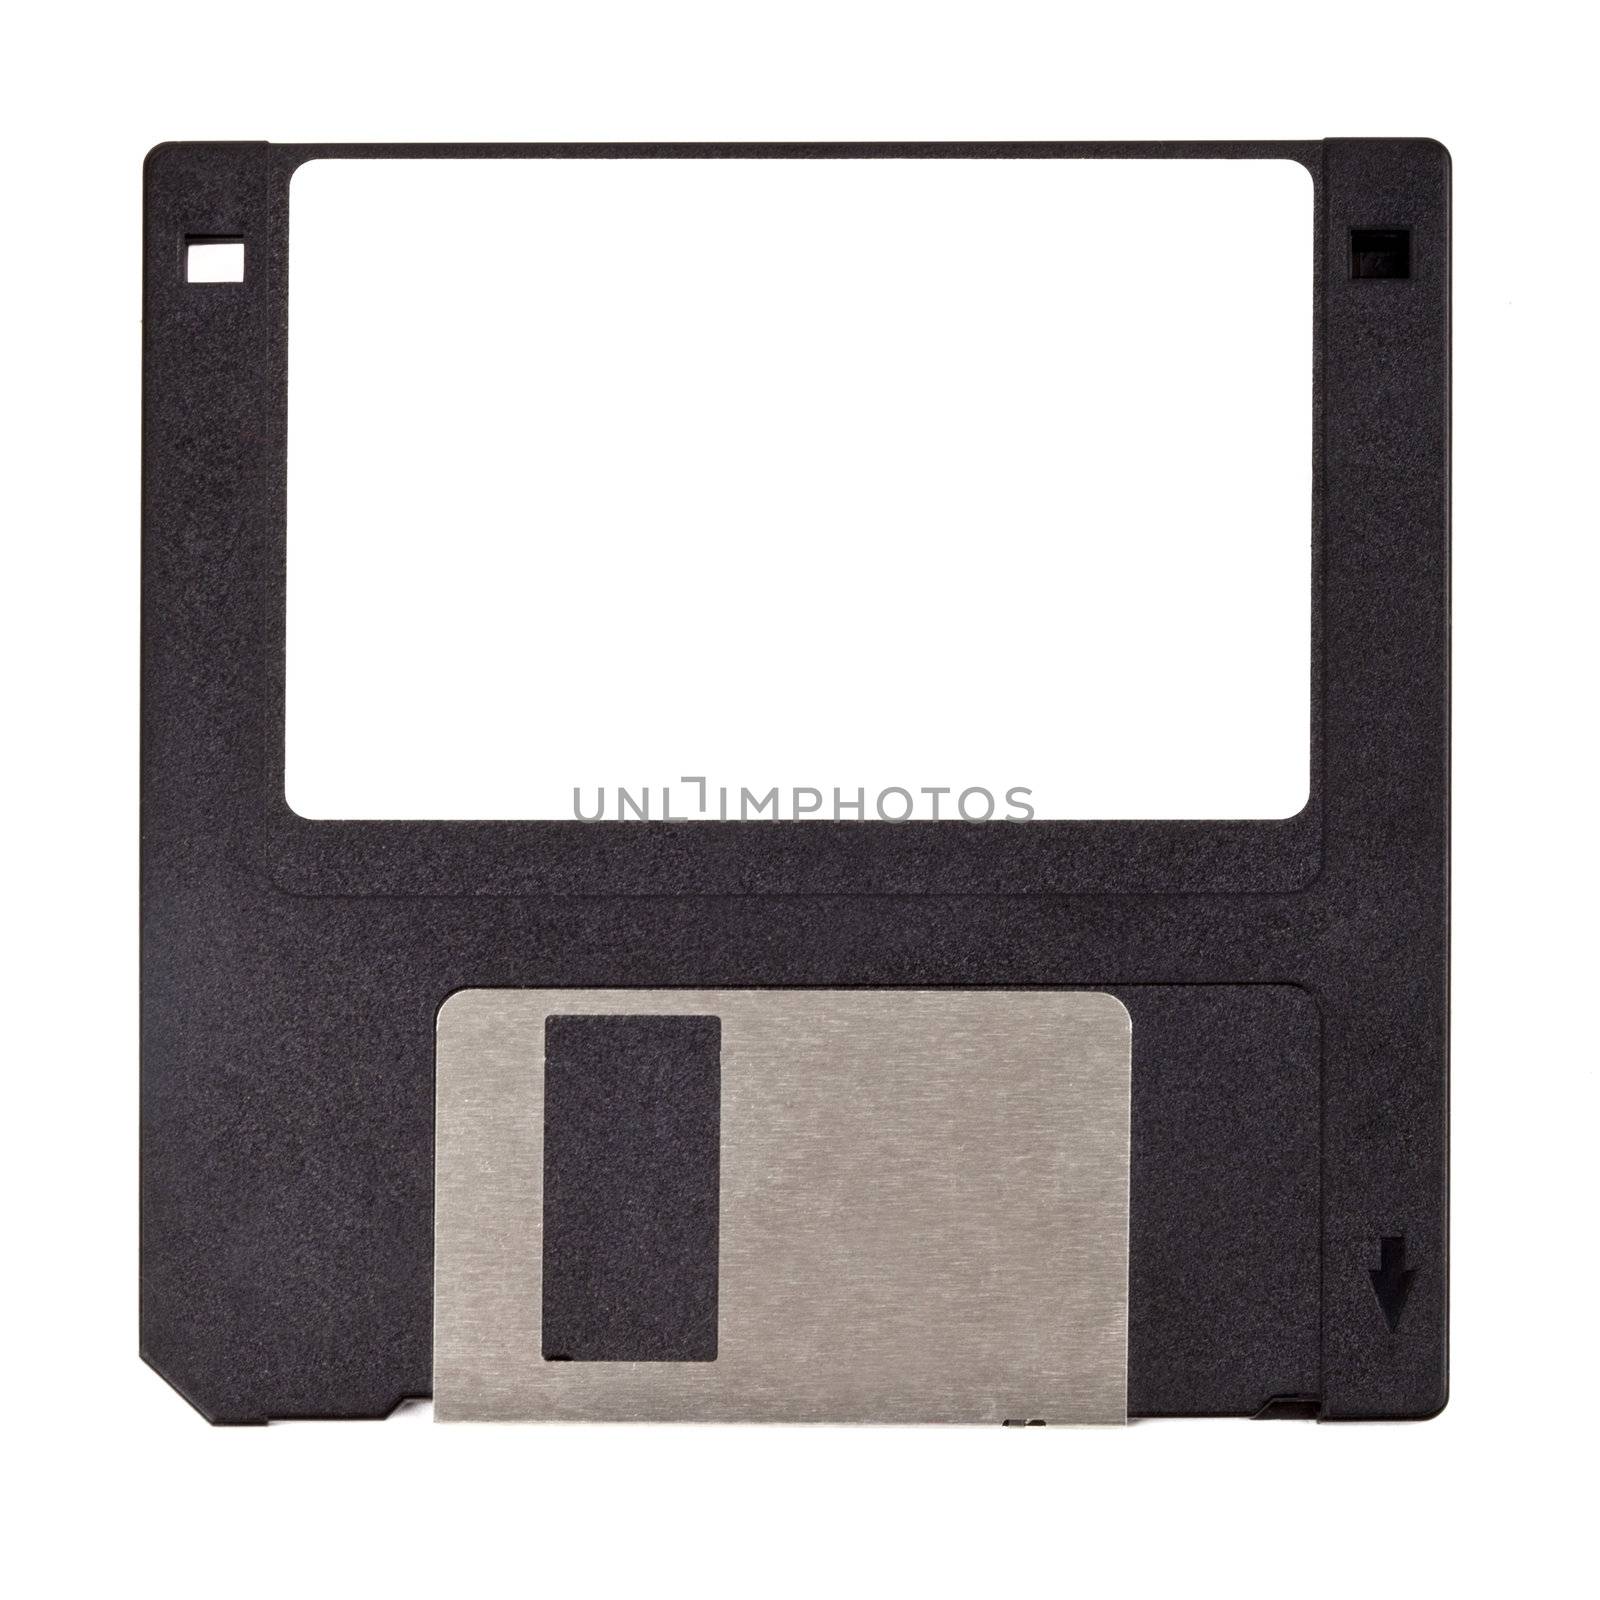 Floppy Disk by chrisdorney